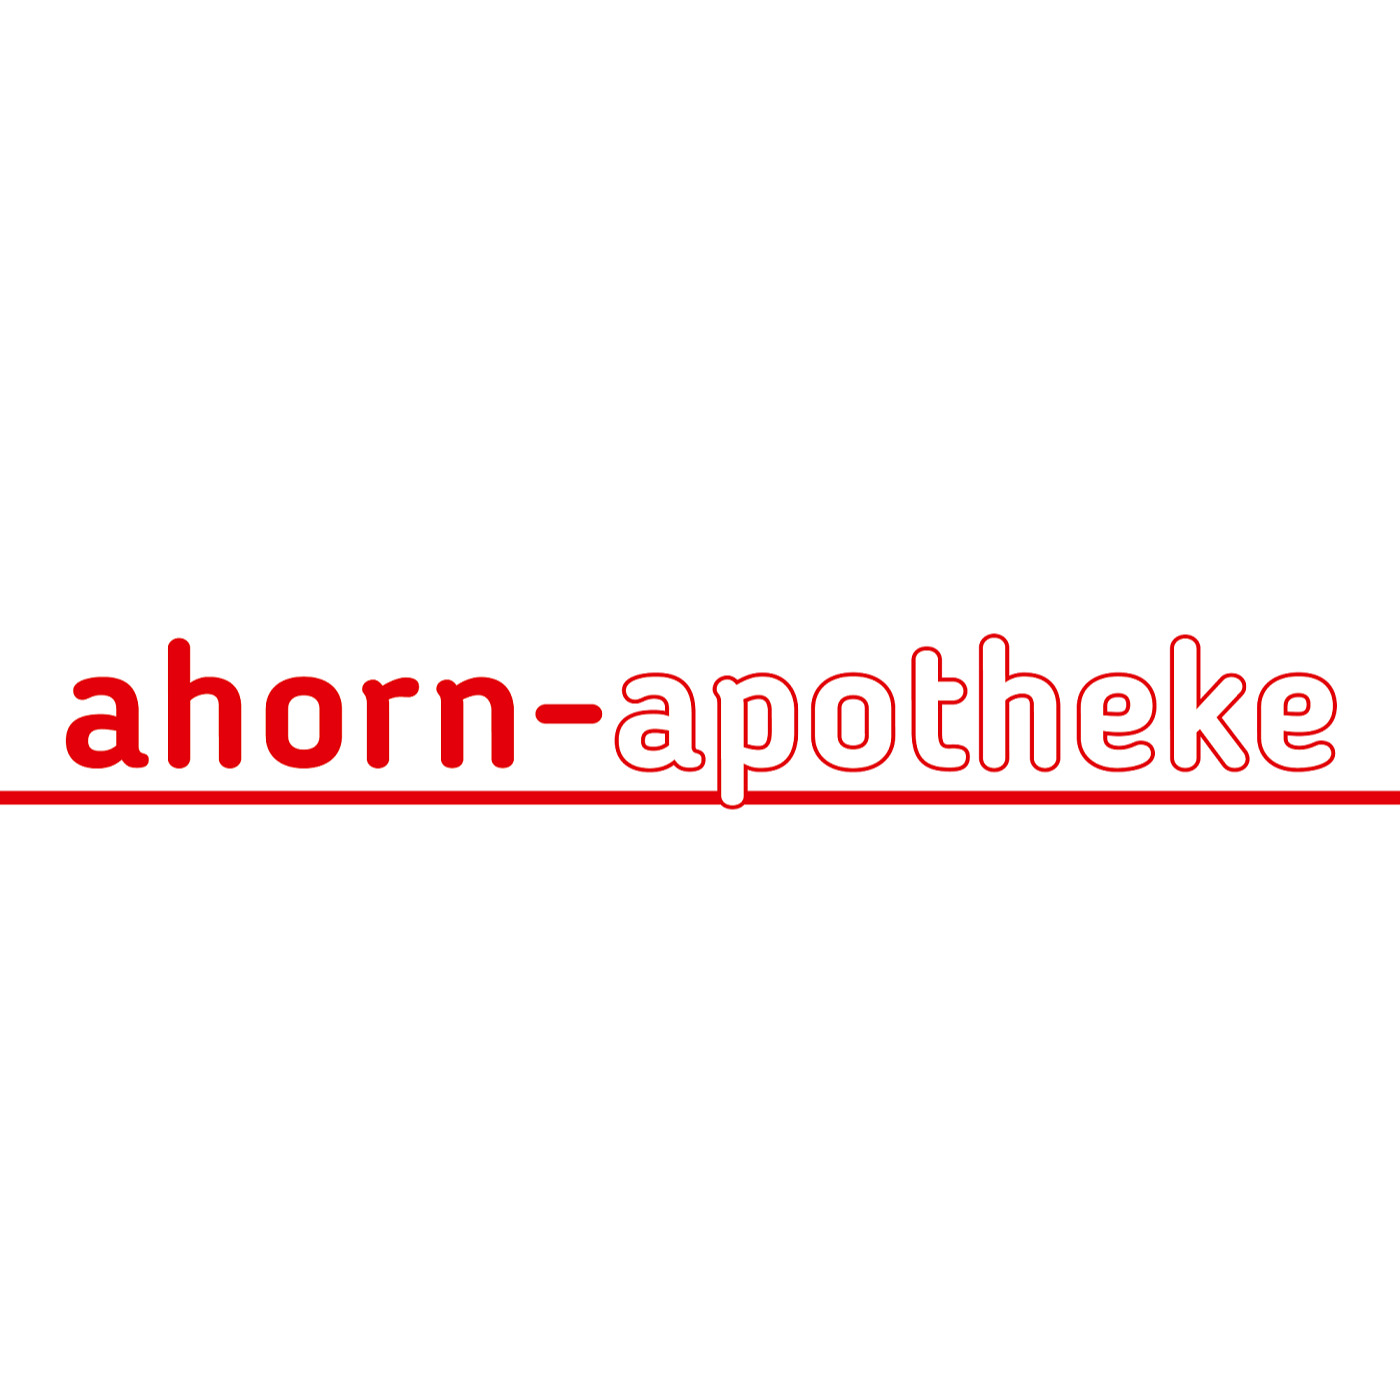 Ahorn Apotheke Inh. Alexander Hildebrandt e.K. in Essen - Logo